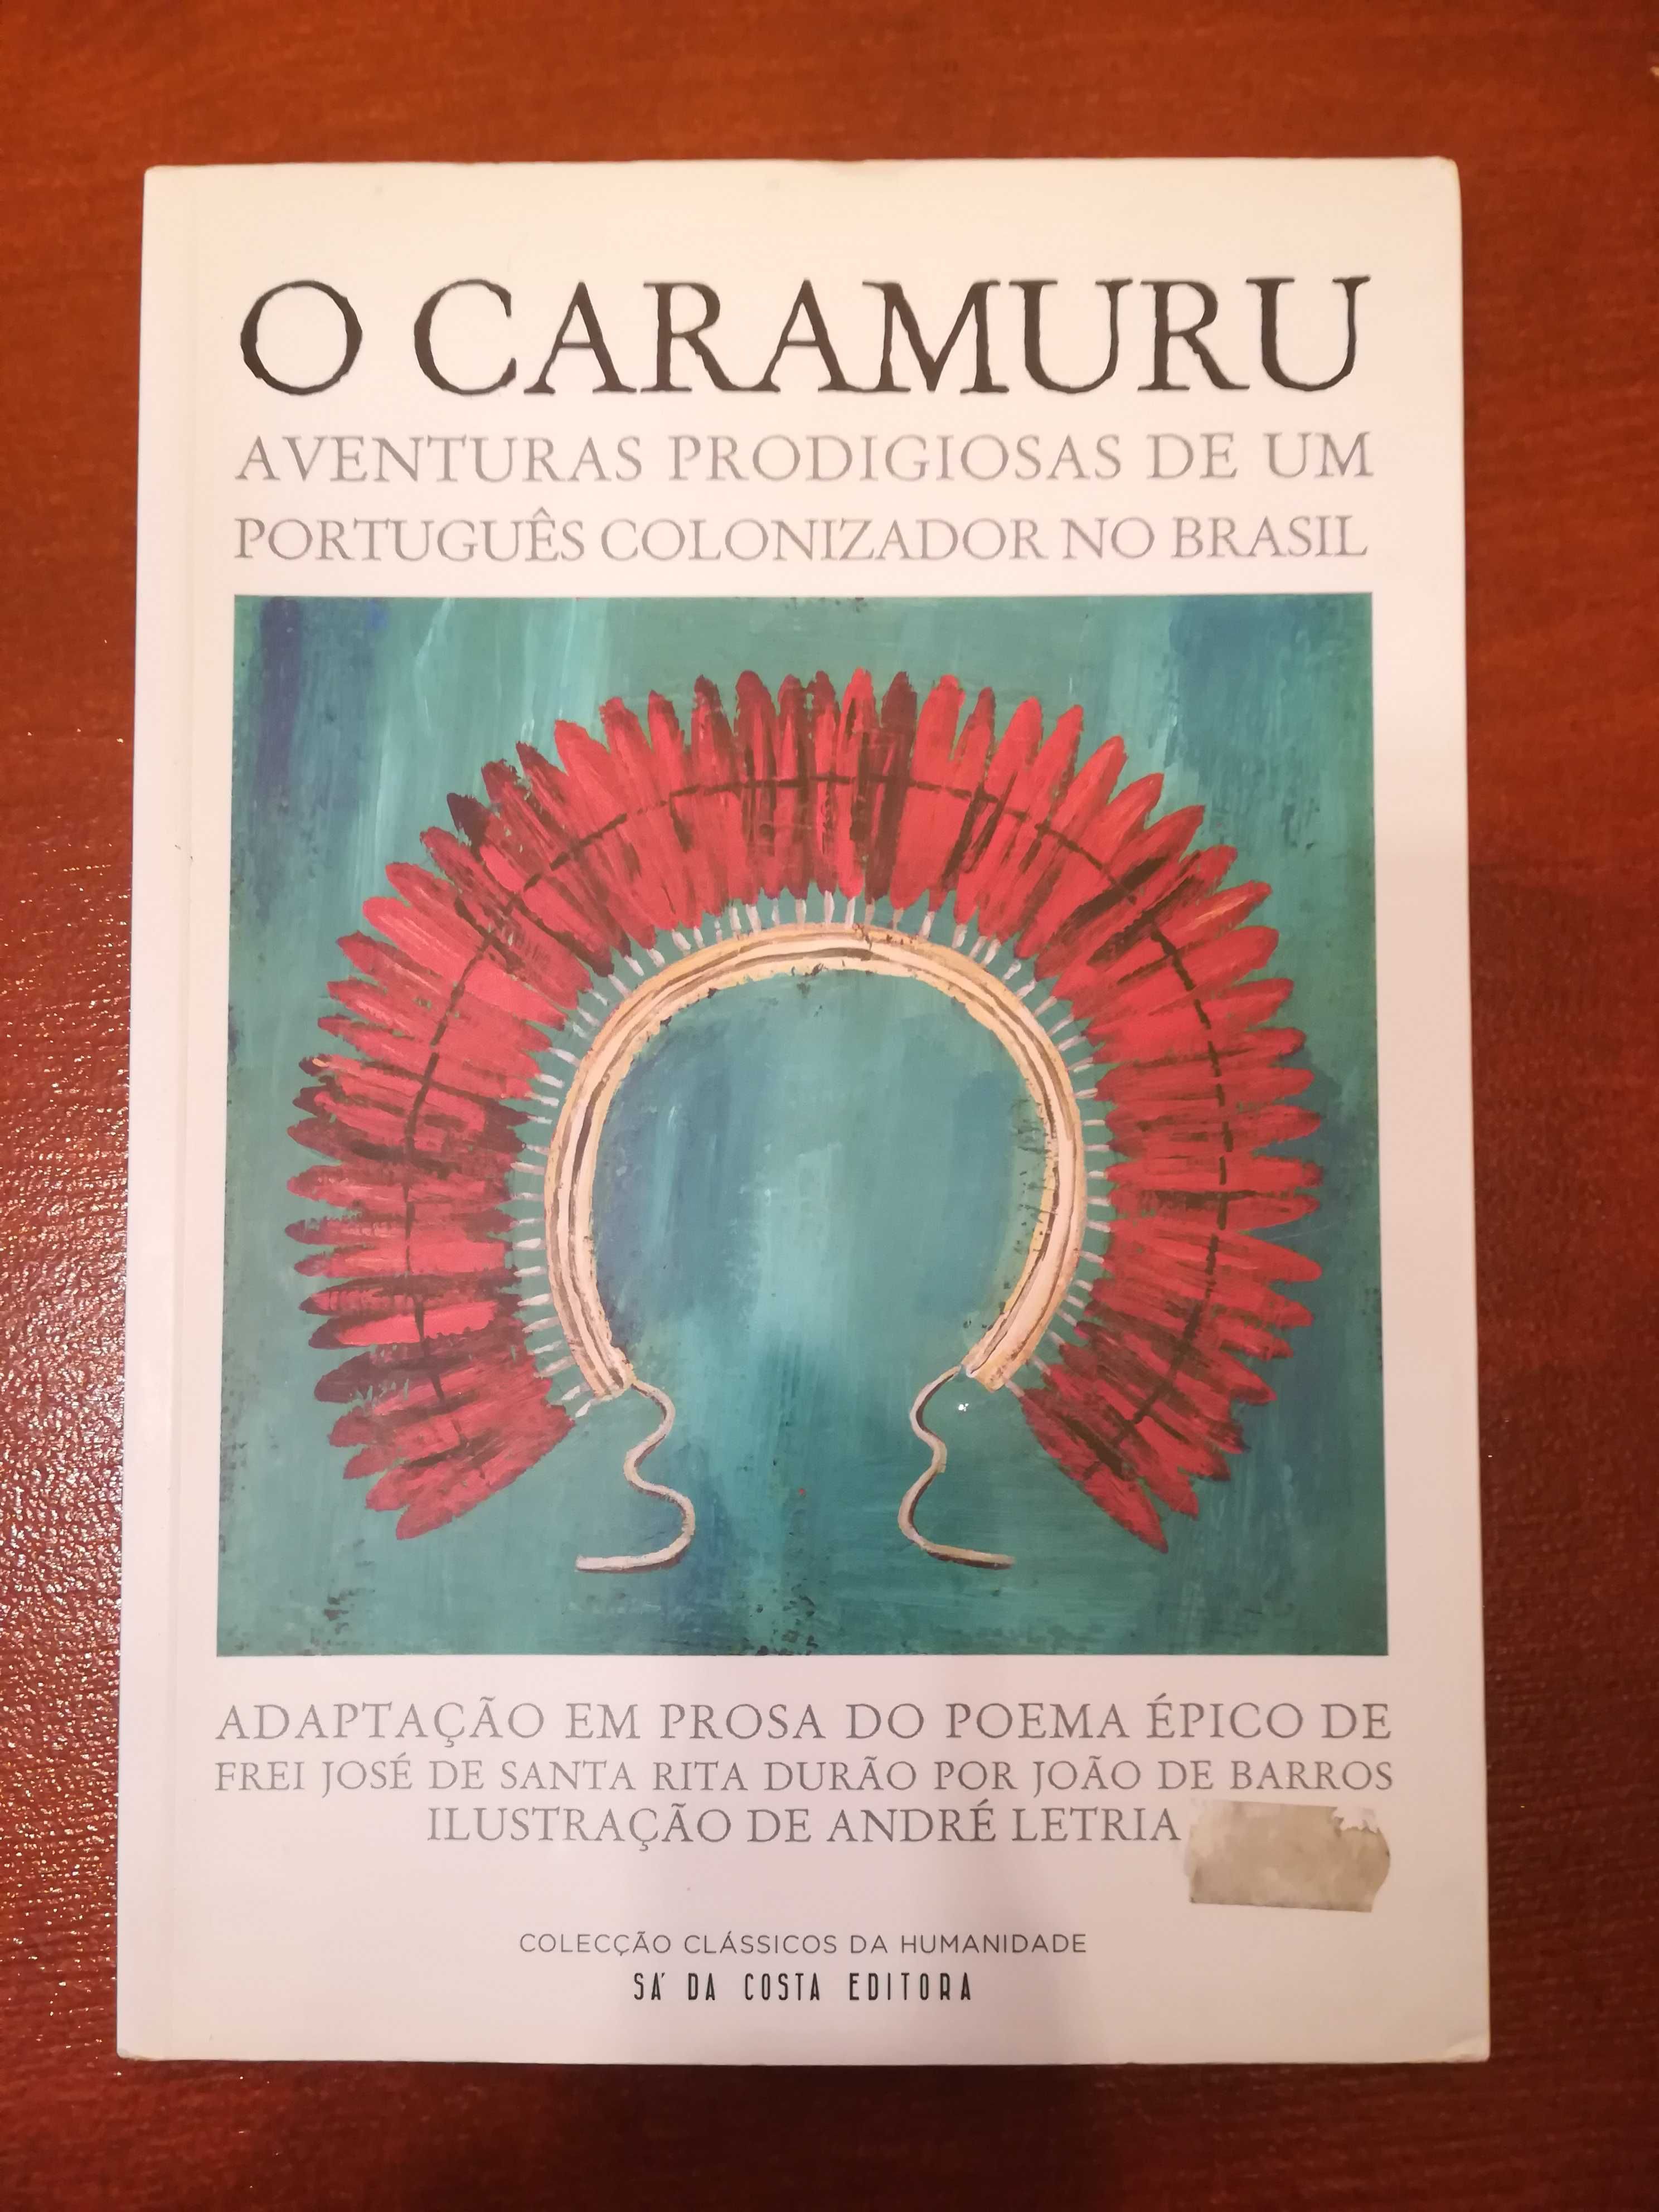 O Caramuru e História Trágico-Marítima